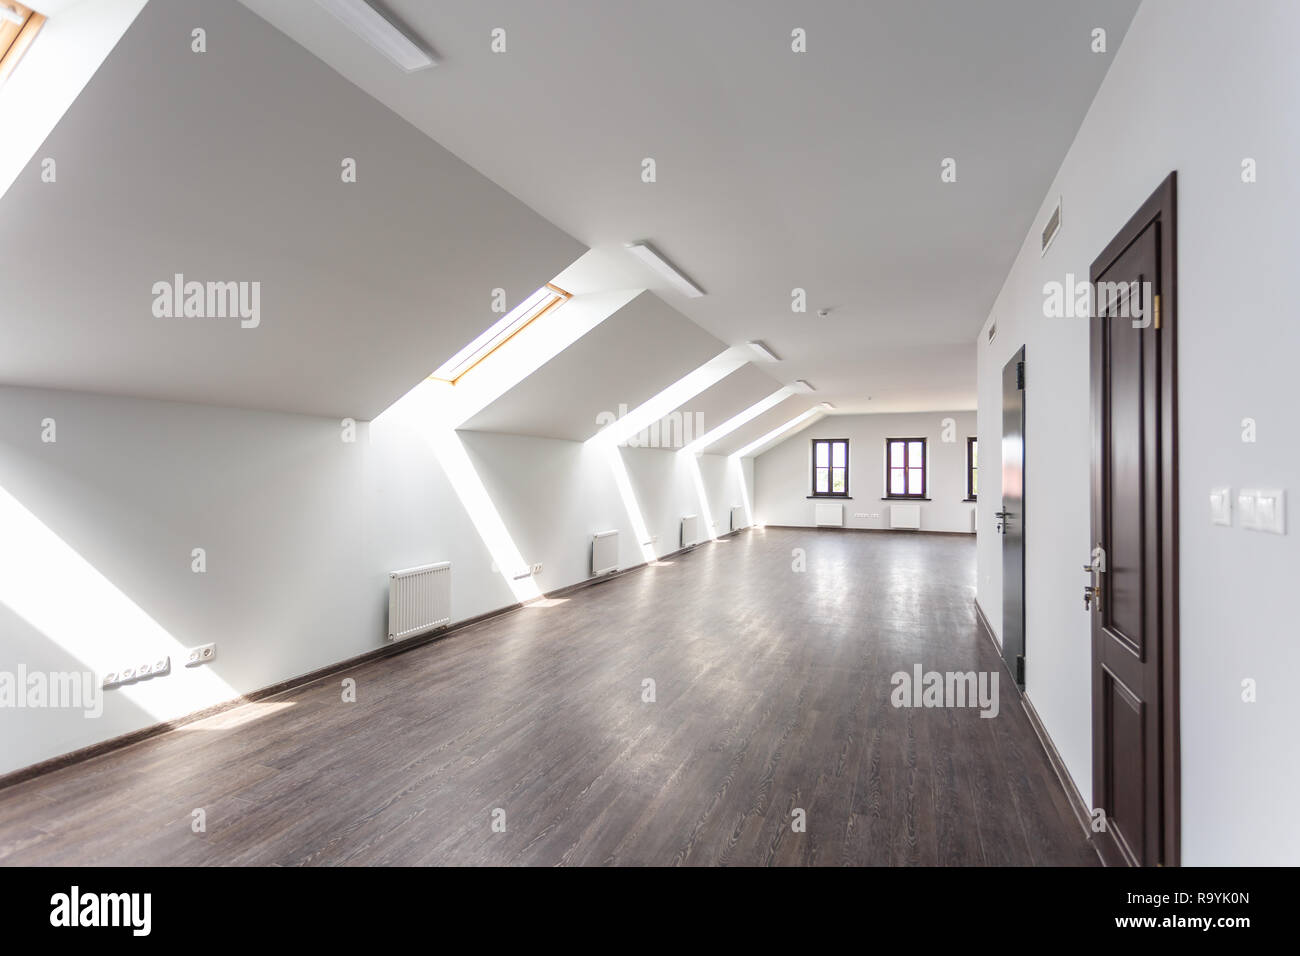 Seitenansicht des unmöblierte Zimmer mit Holzboden auf dem Dach, weiße Wände, helle dayligh Stockfoto